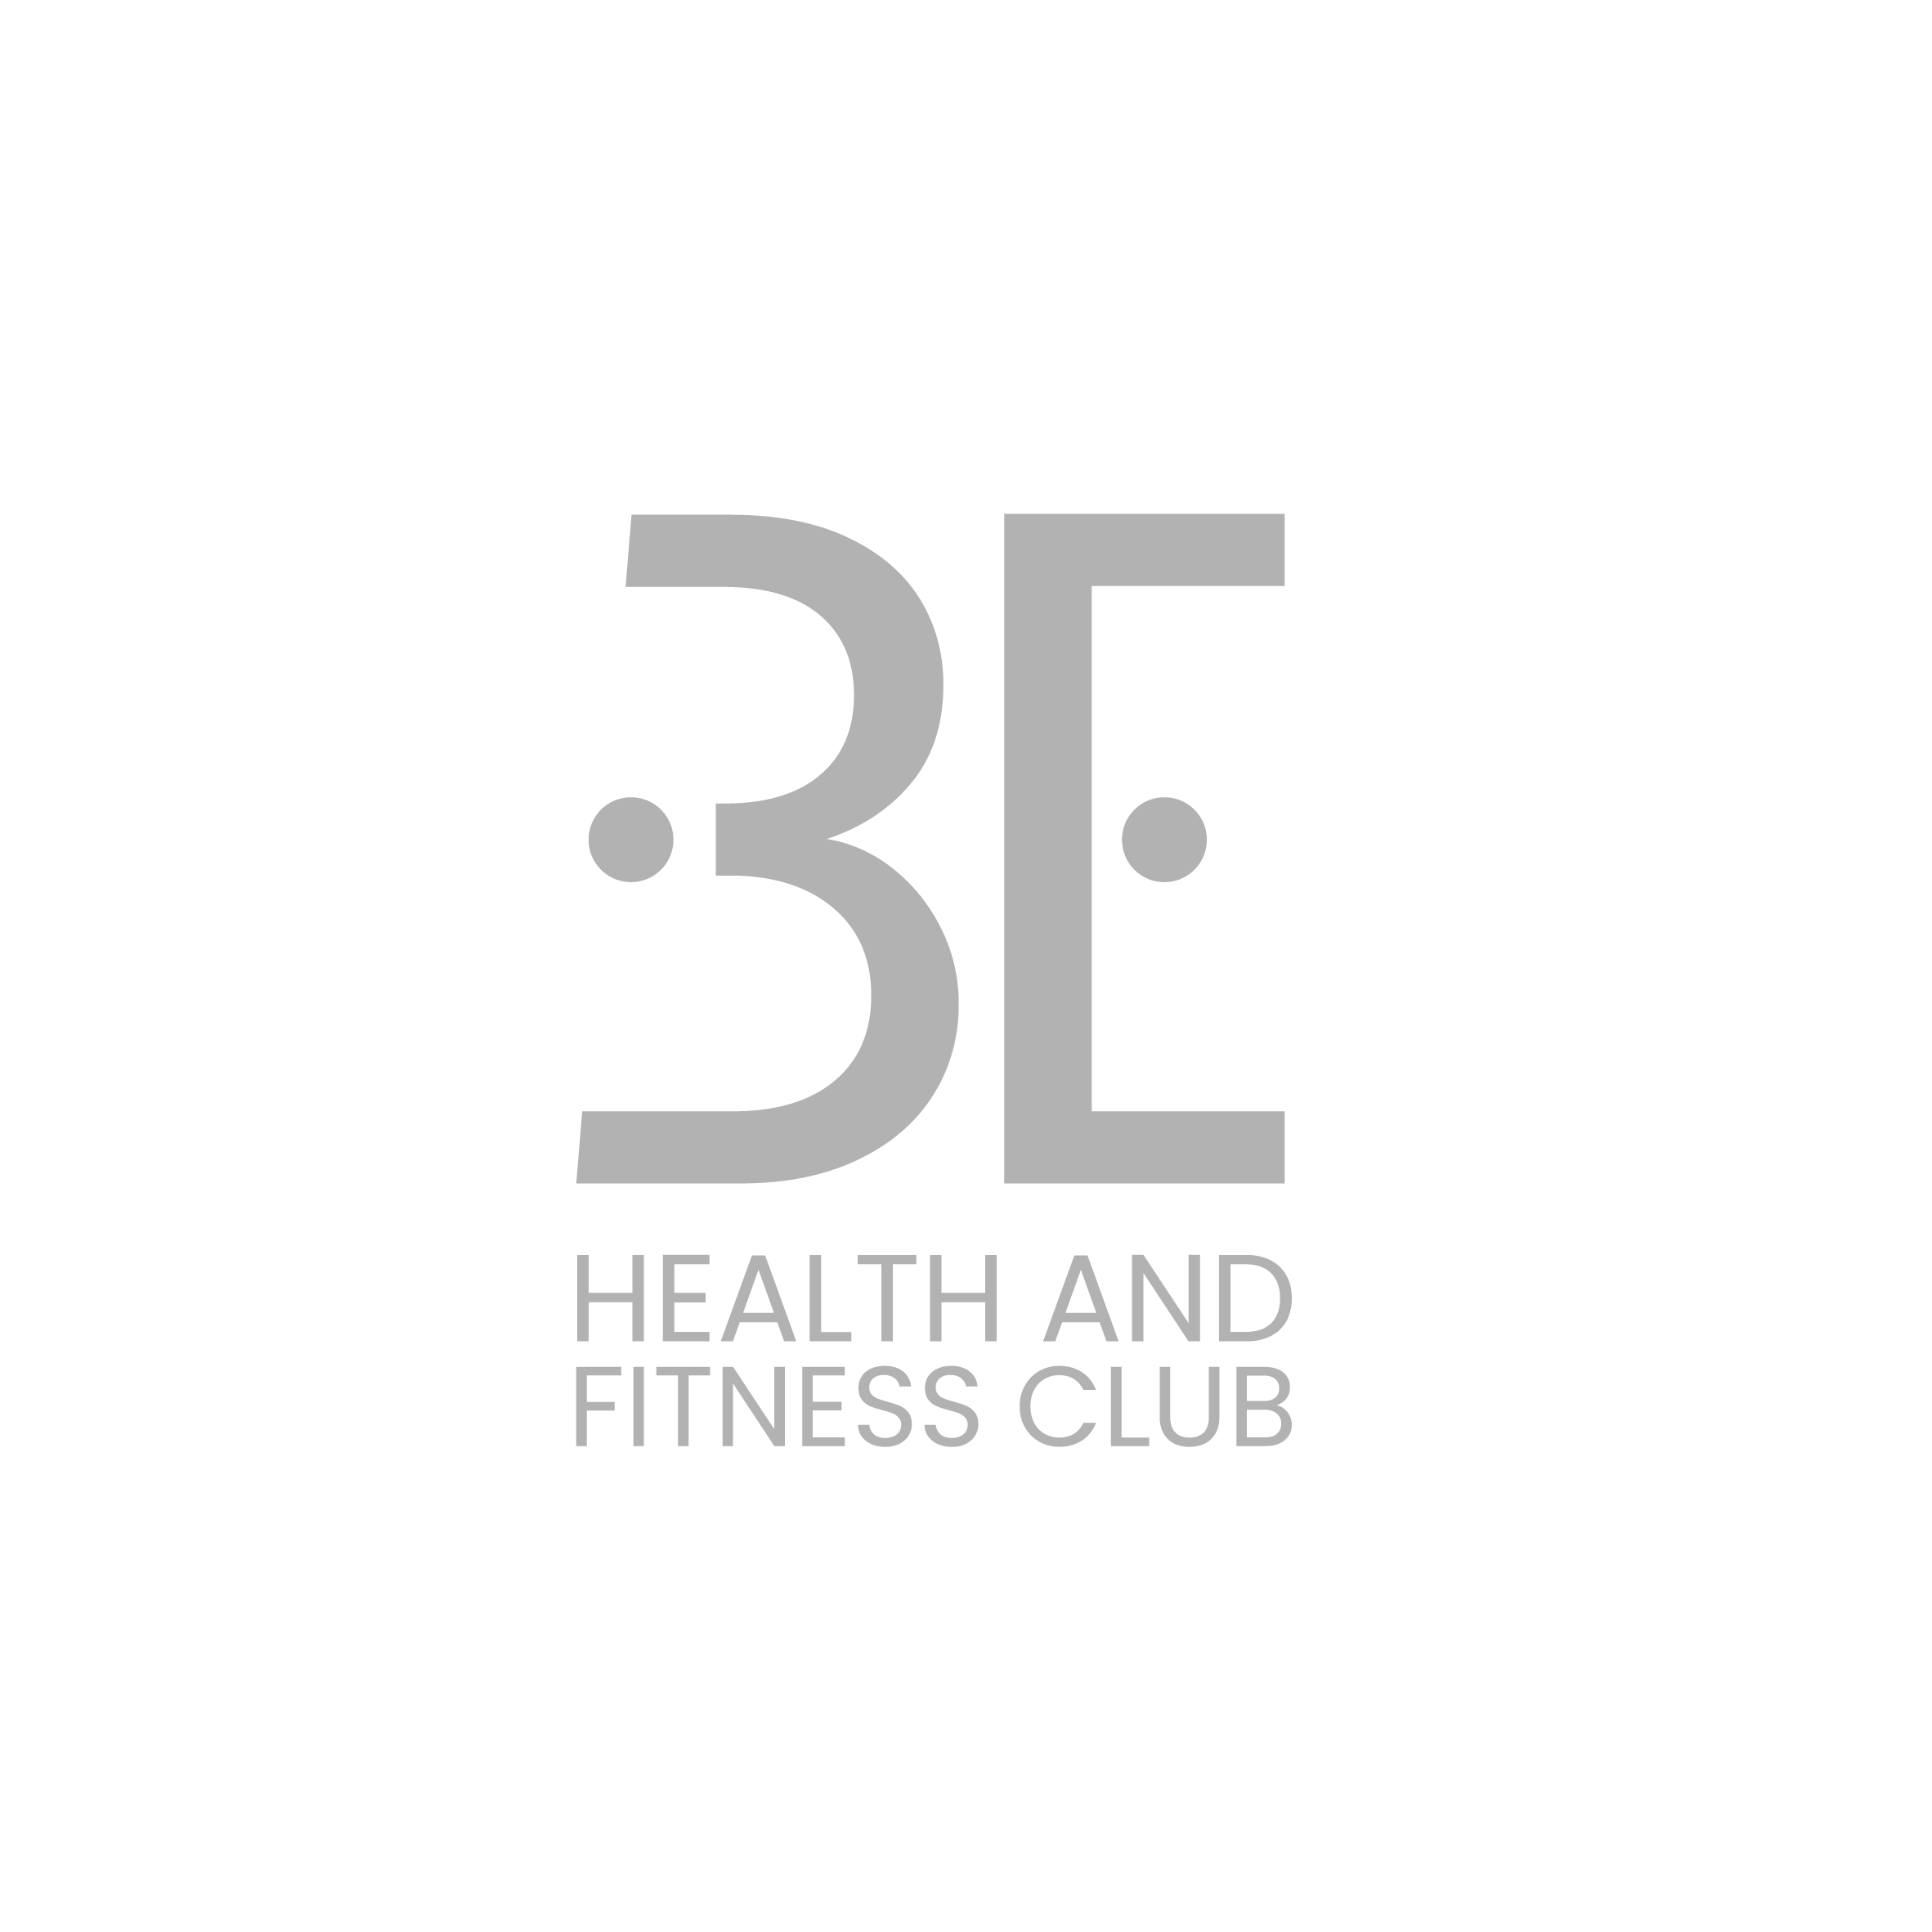 Be Health & Fitness's logo